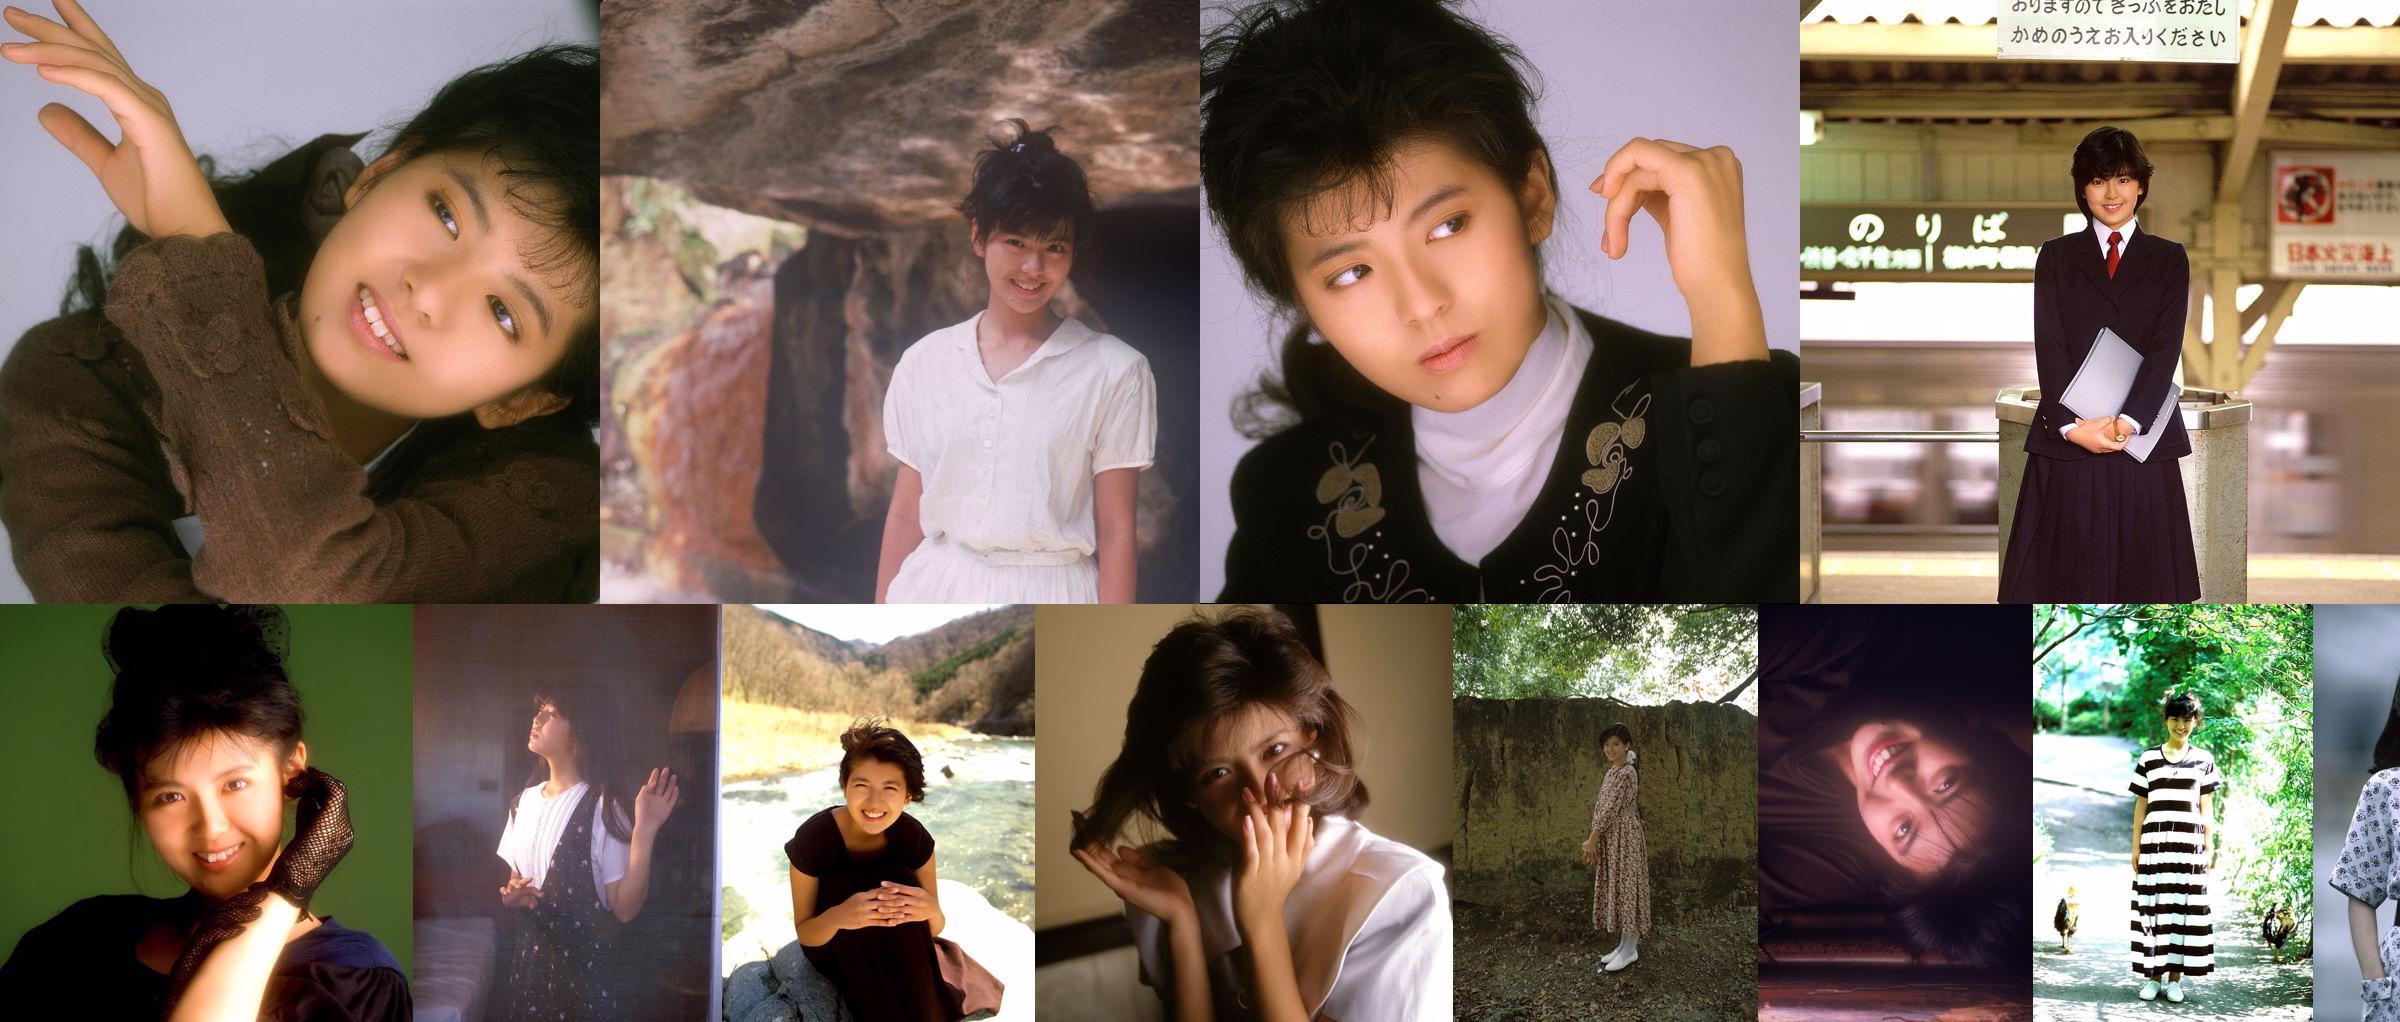 [NS Eyes] SF-No.215 Yoko Minamino Yoko Minamino No.b02c86 Pagina 1